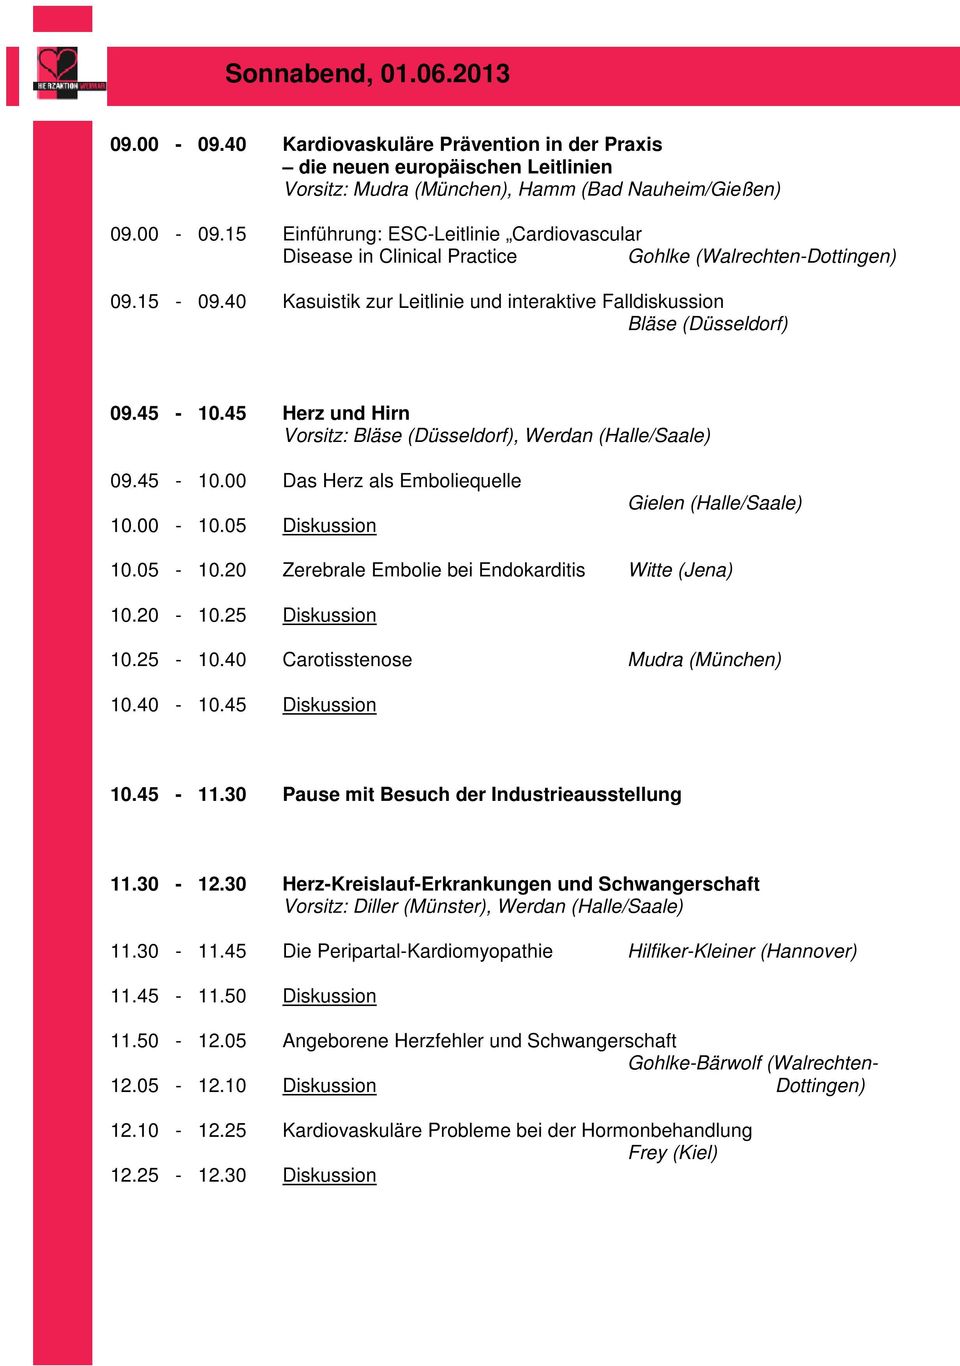 00-10.05 Diskussion Gielen (Halle/Saale) 10.05-10.20 Zerebrale Embolie bei Endokarditis Witte (Jena) 10.20-10.25 Diskussion 10.25-10.40 Carotisstenose Mudra (München) 10.40-10.45 Diskussion 10.45-11.